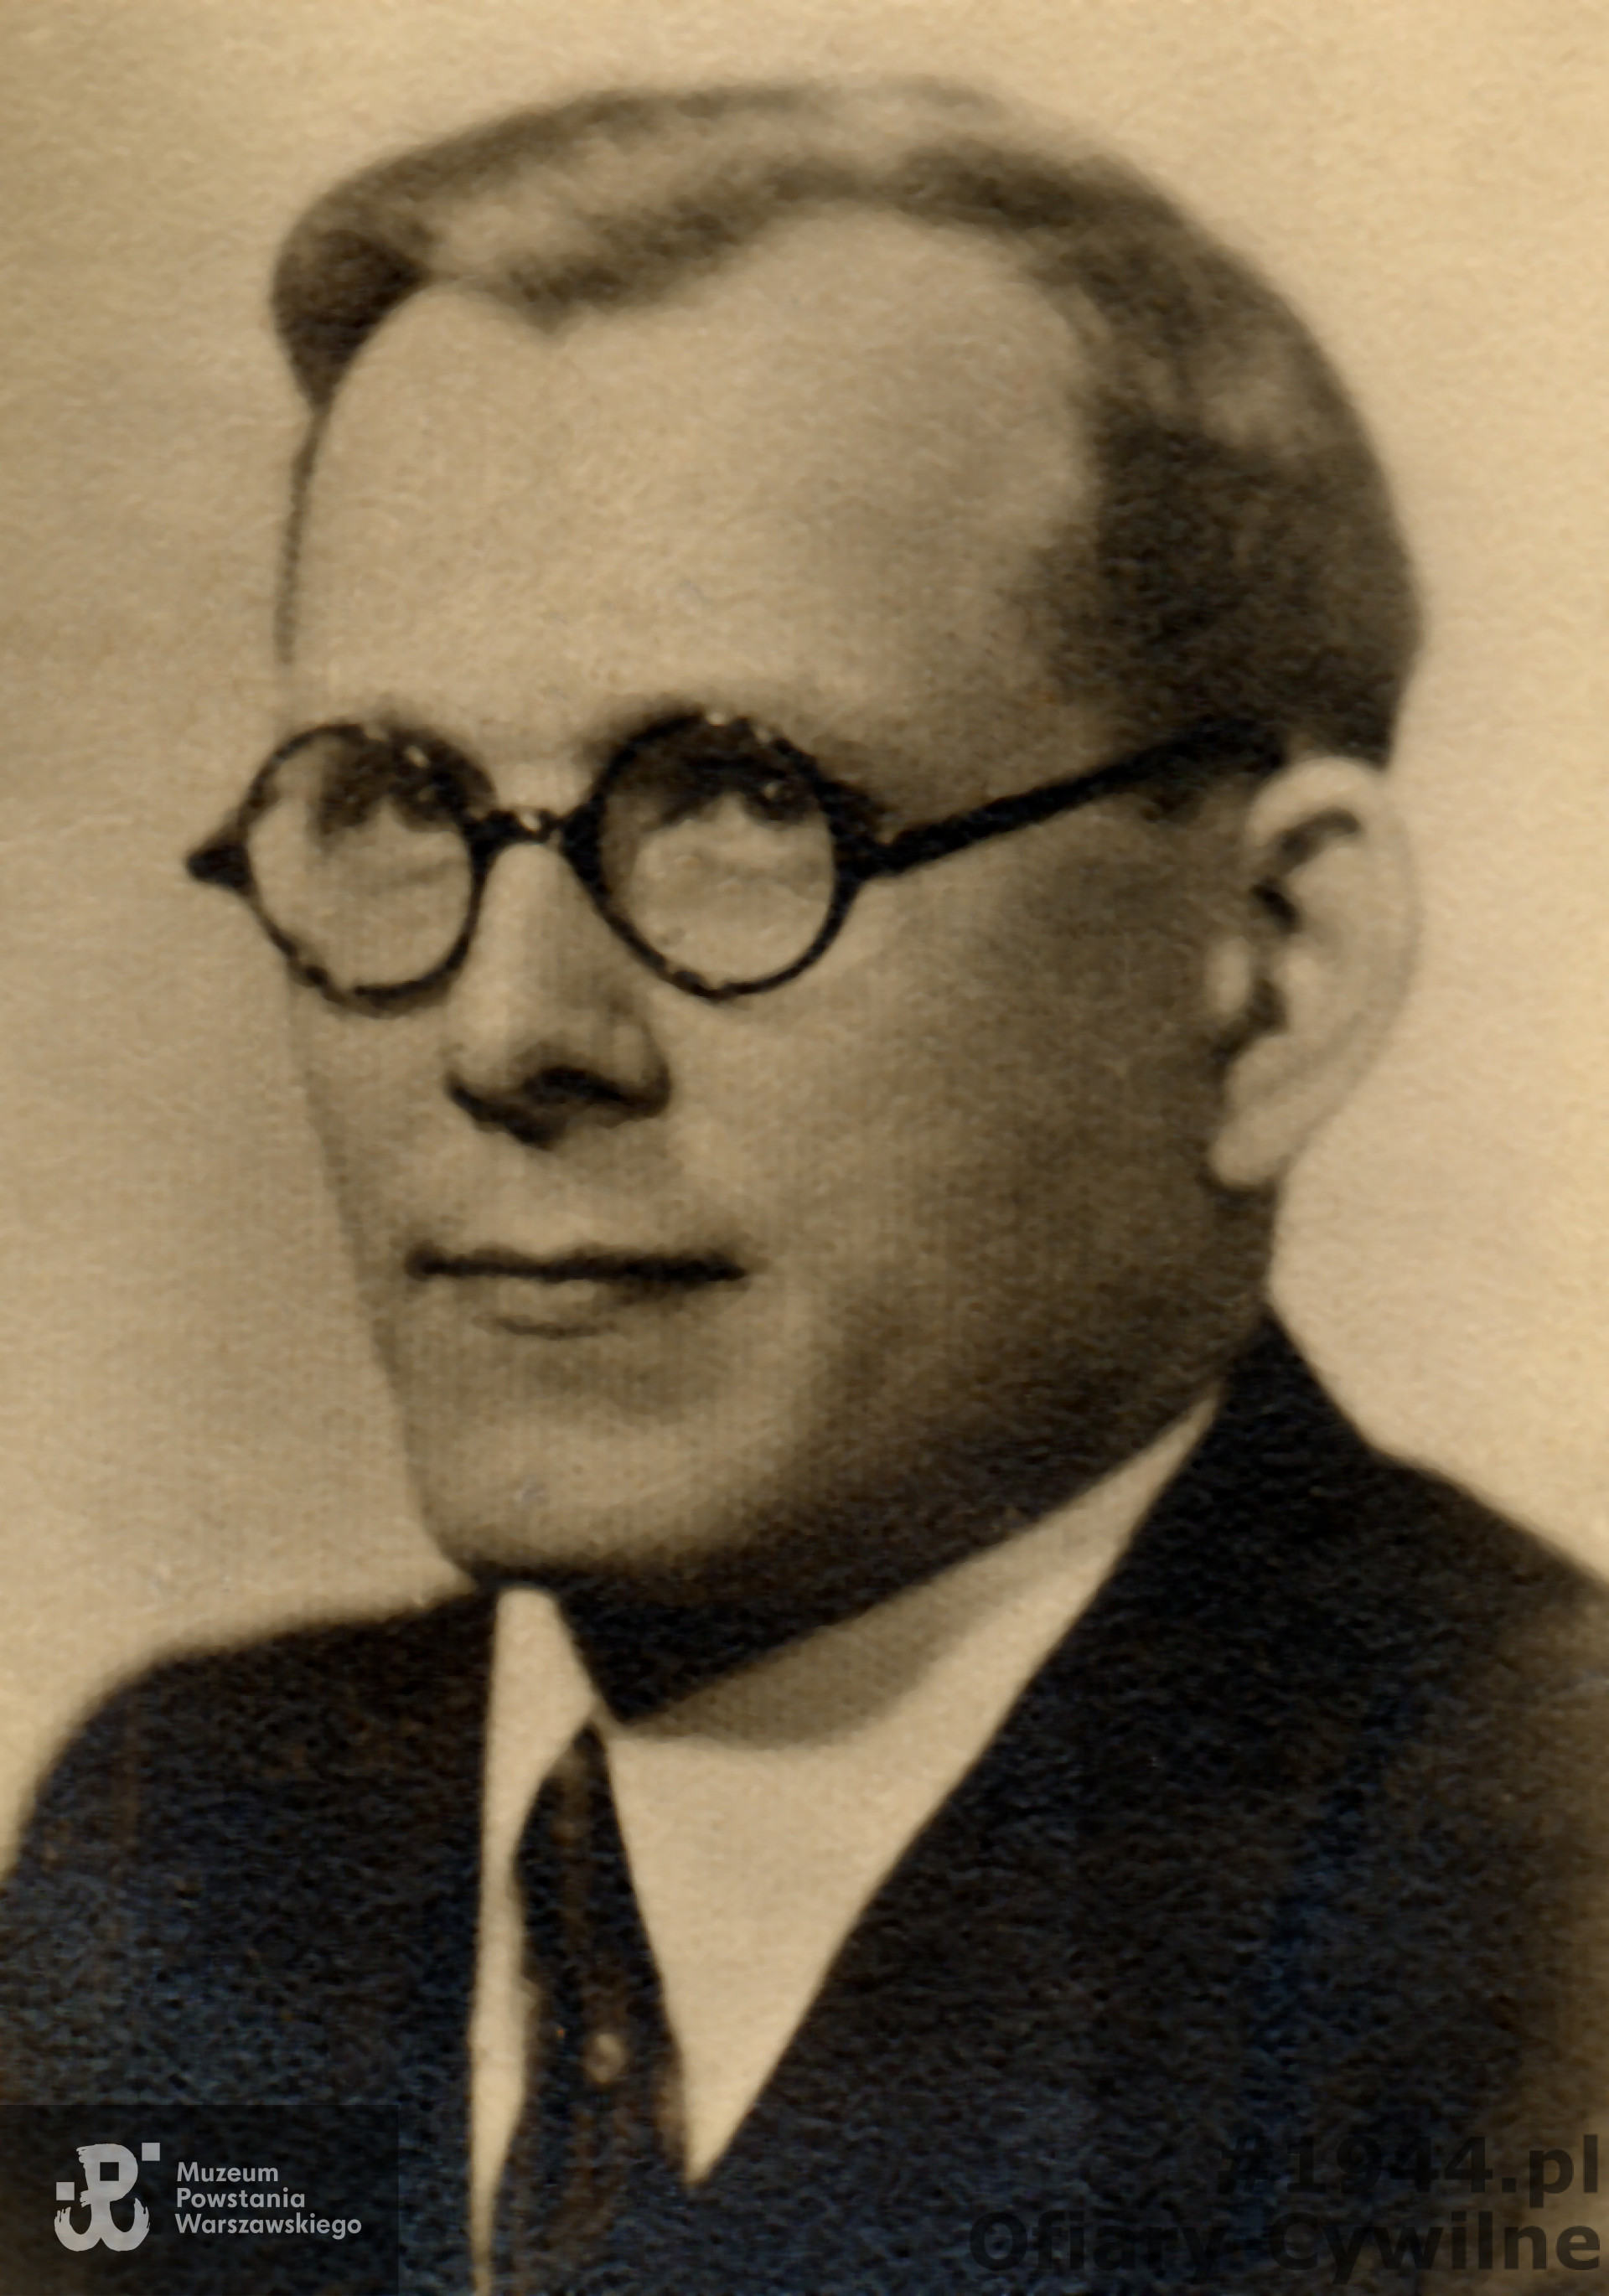 Jerzy Krawczyk (1909-1944), zdjęcie udostępnione przez córkę panią Marie Jarymowicz